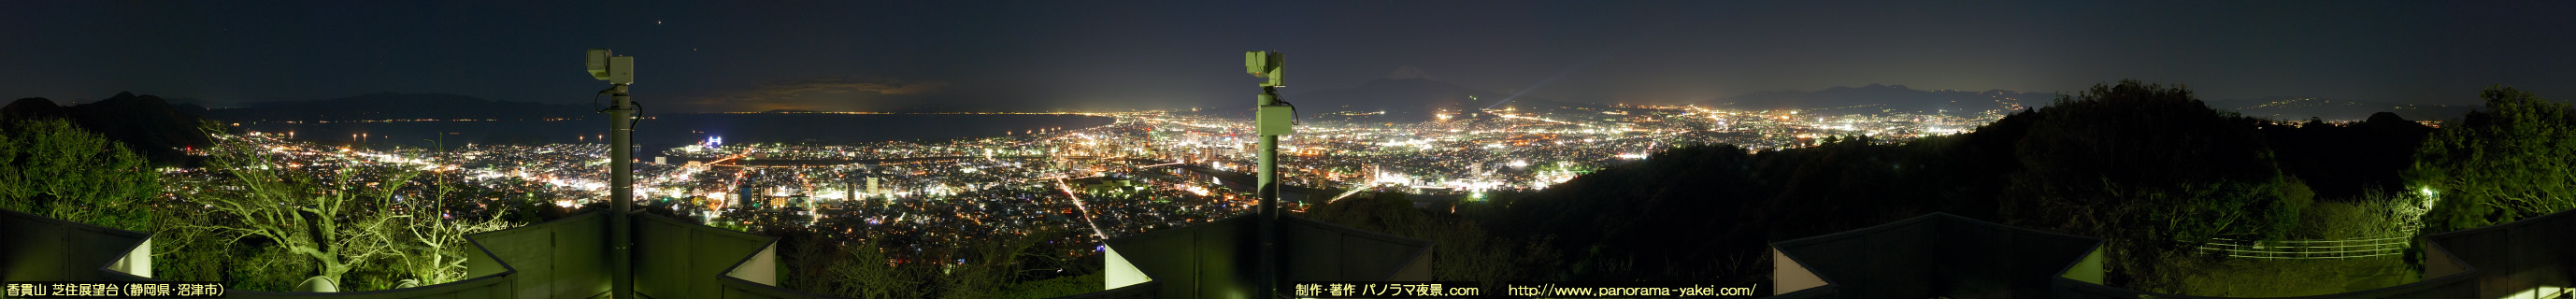 香貫山 芝住展望台からの360度パノラマ夜景写真 ～富士山と沼津市街の夜景～